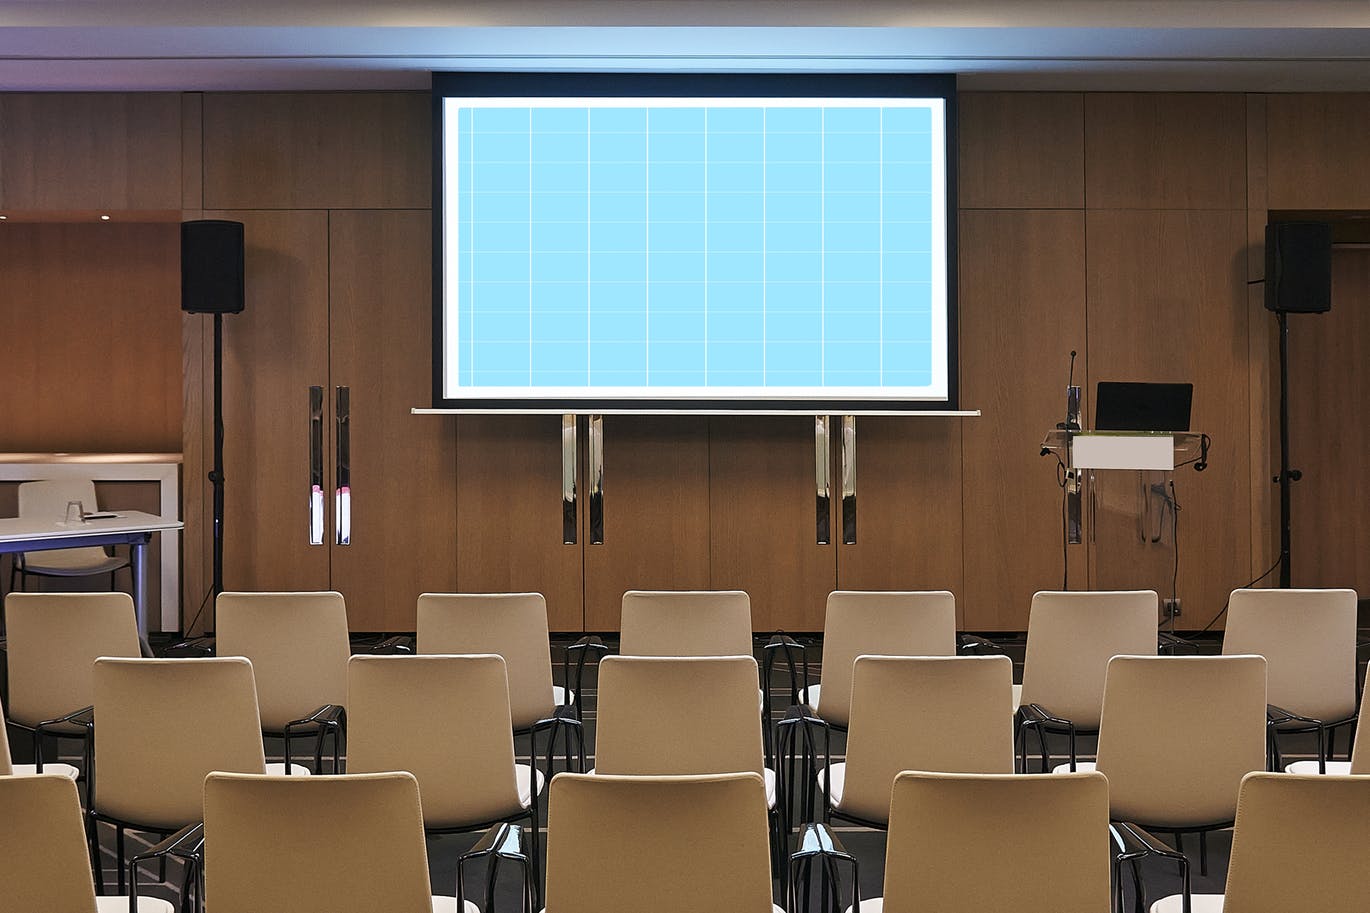 会议室电视/投影屏幕样机第一素材精选模板v1 Conference_Room_Screen-HORIZ-Mockup插图